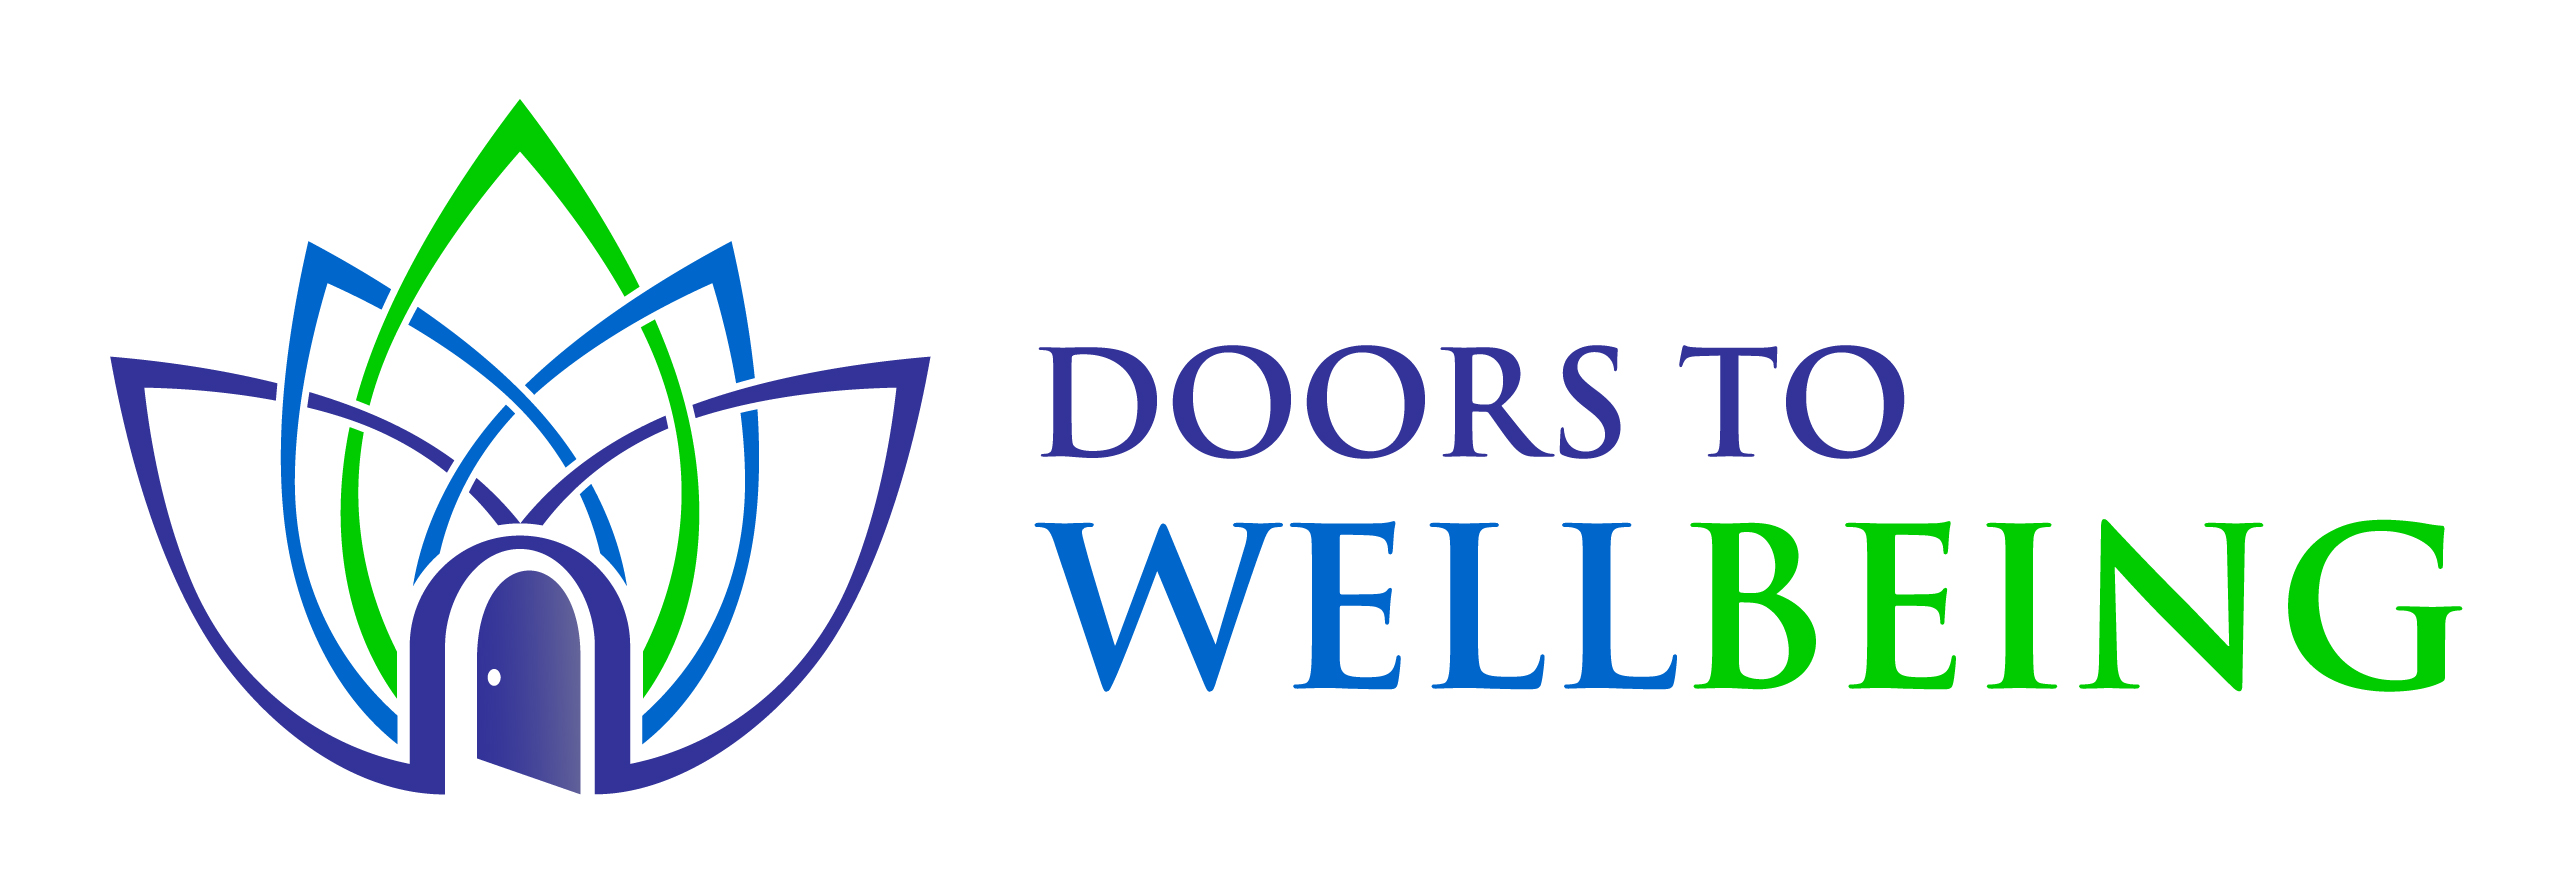 doors to wellbeing logo